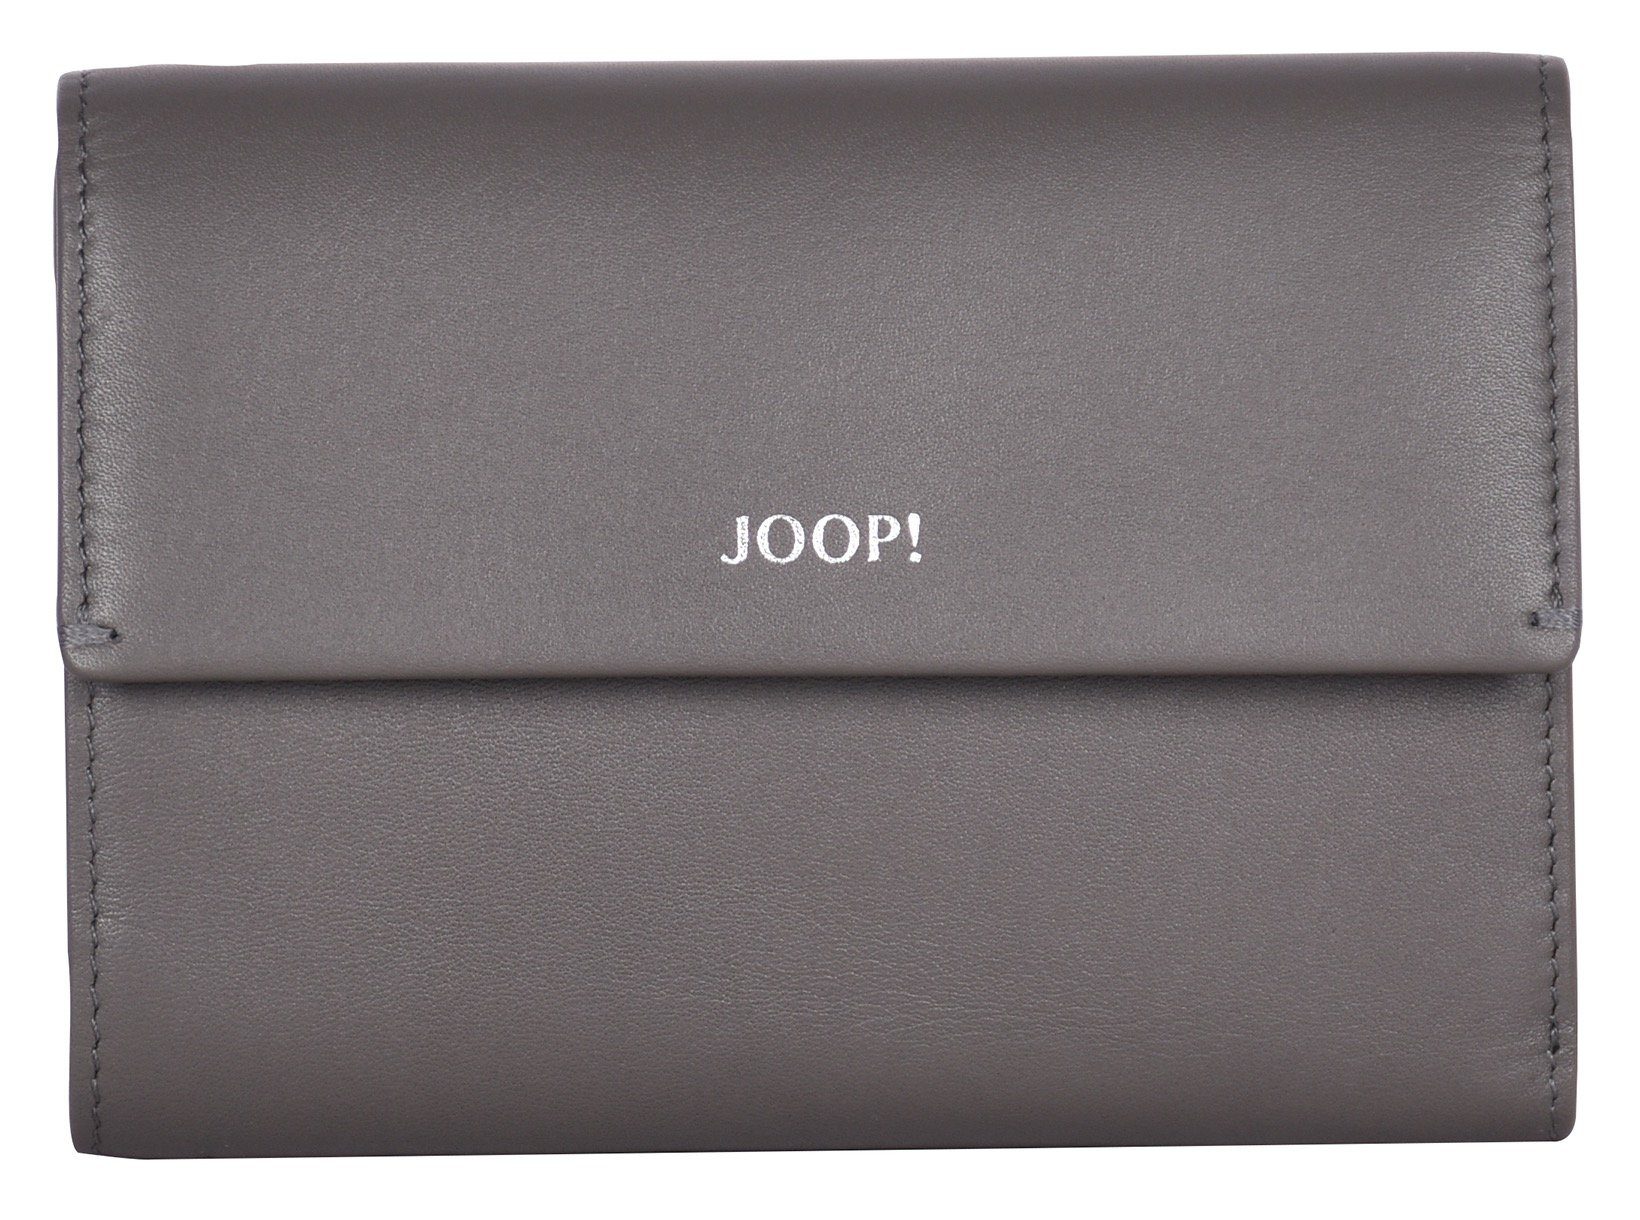 Joop! Geldbörse sofisticato 1.0 cosma purse mh10f, in schlichtem Design darkgrey